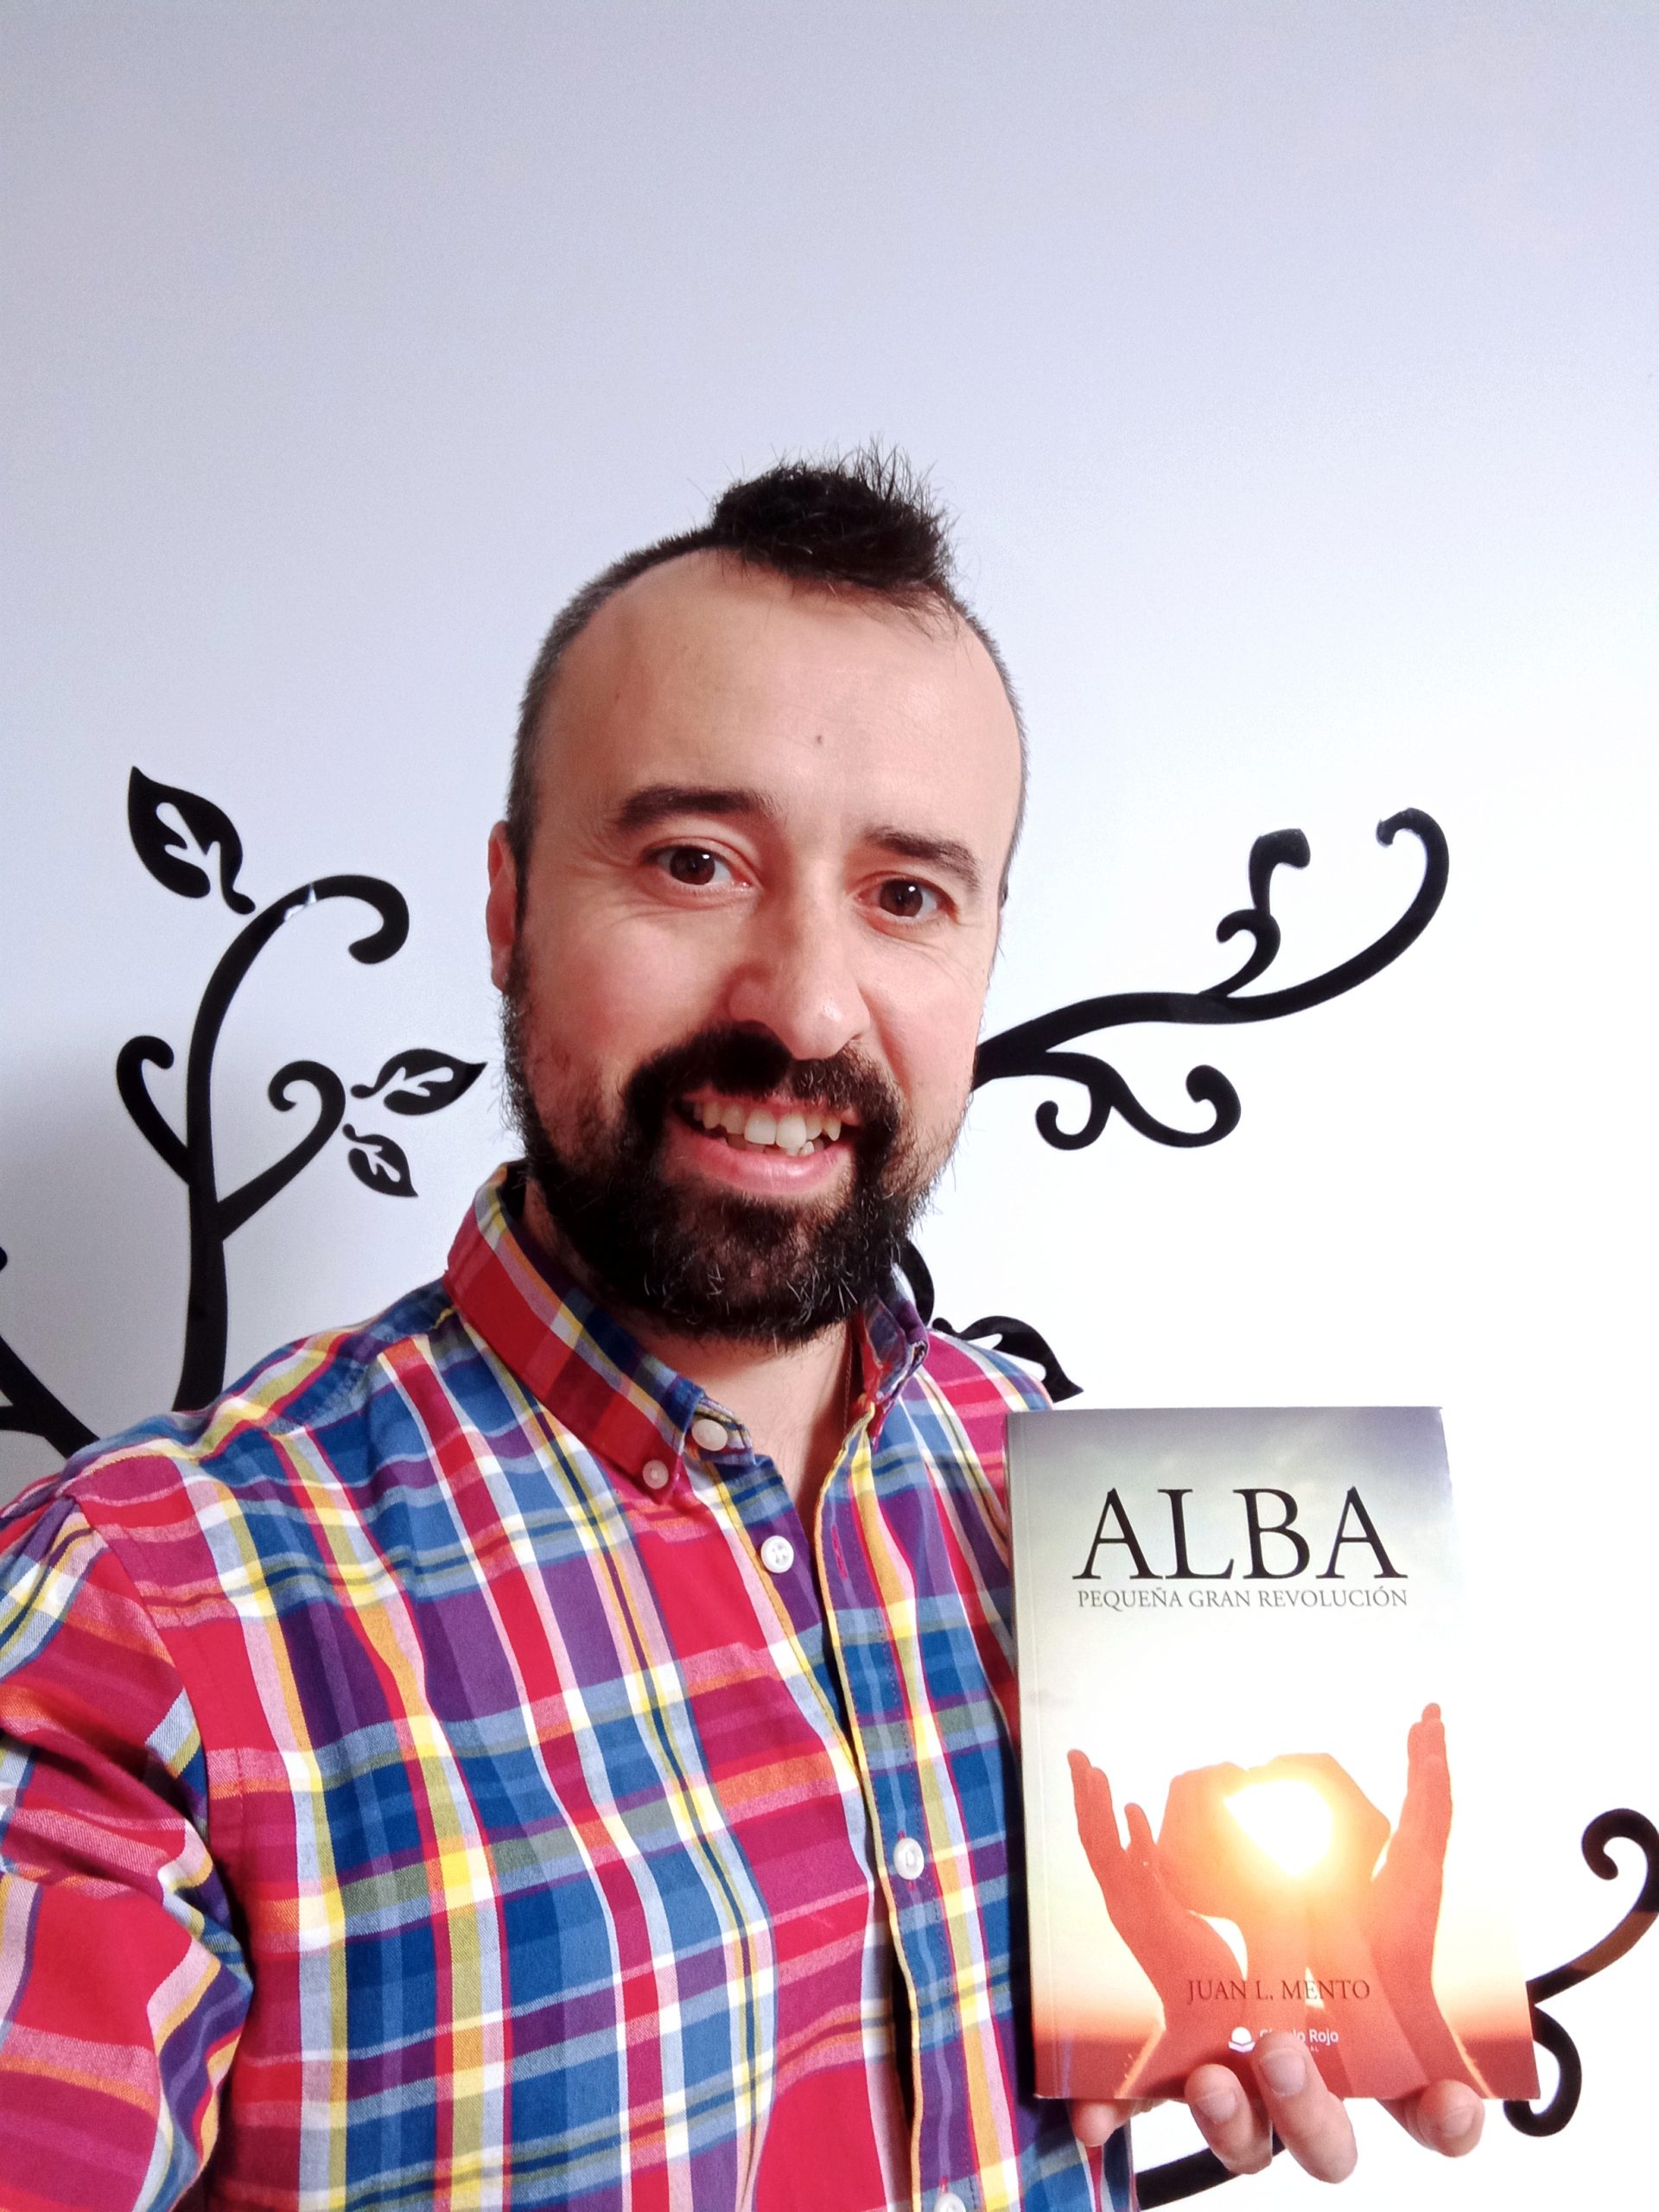 Juan L. Mento, nos habla sobre su obra “Alba, pequeña gran revolución”, que ha publicado con la editorial Círculo Rojo.